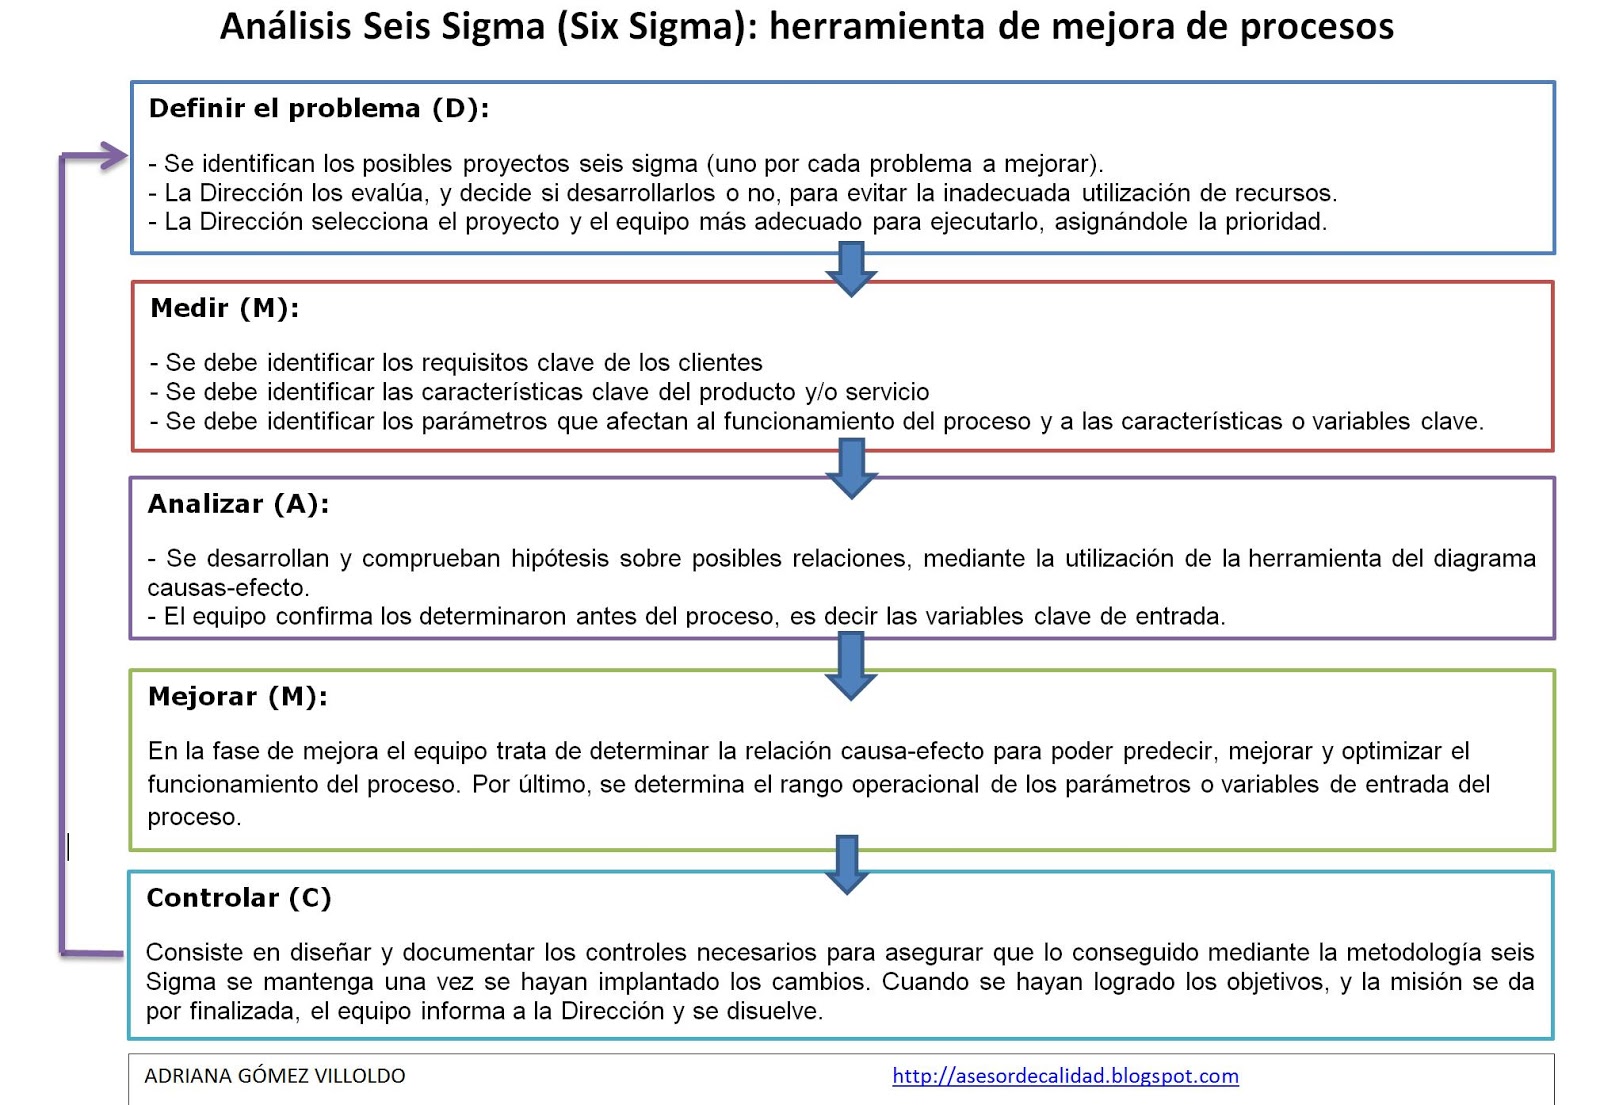 Punto La nuestra Lanzamiento Manual de gestión de calidad paso a paso: Análisis Seis Sigma (Six Sigma):  herramienta de mejora de procesos